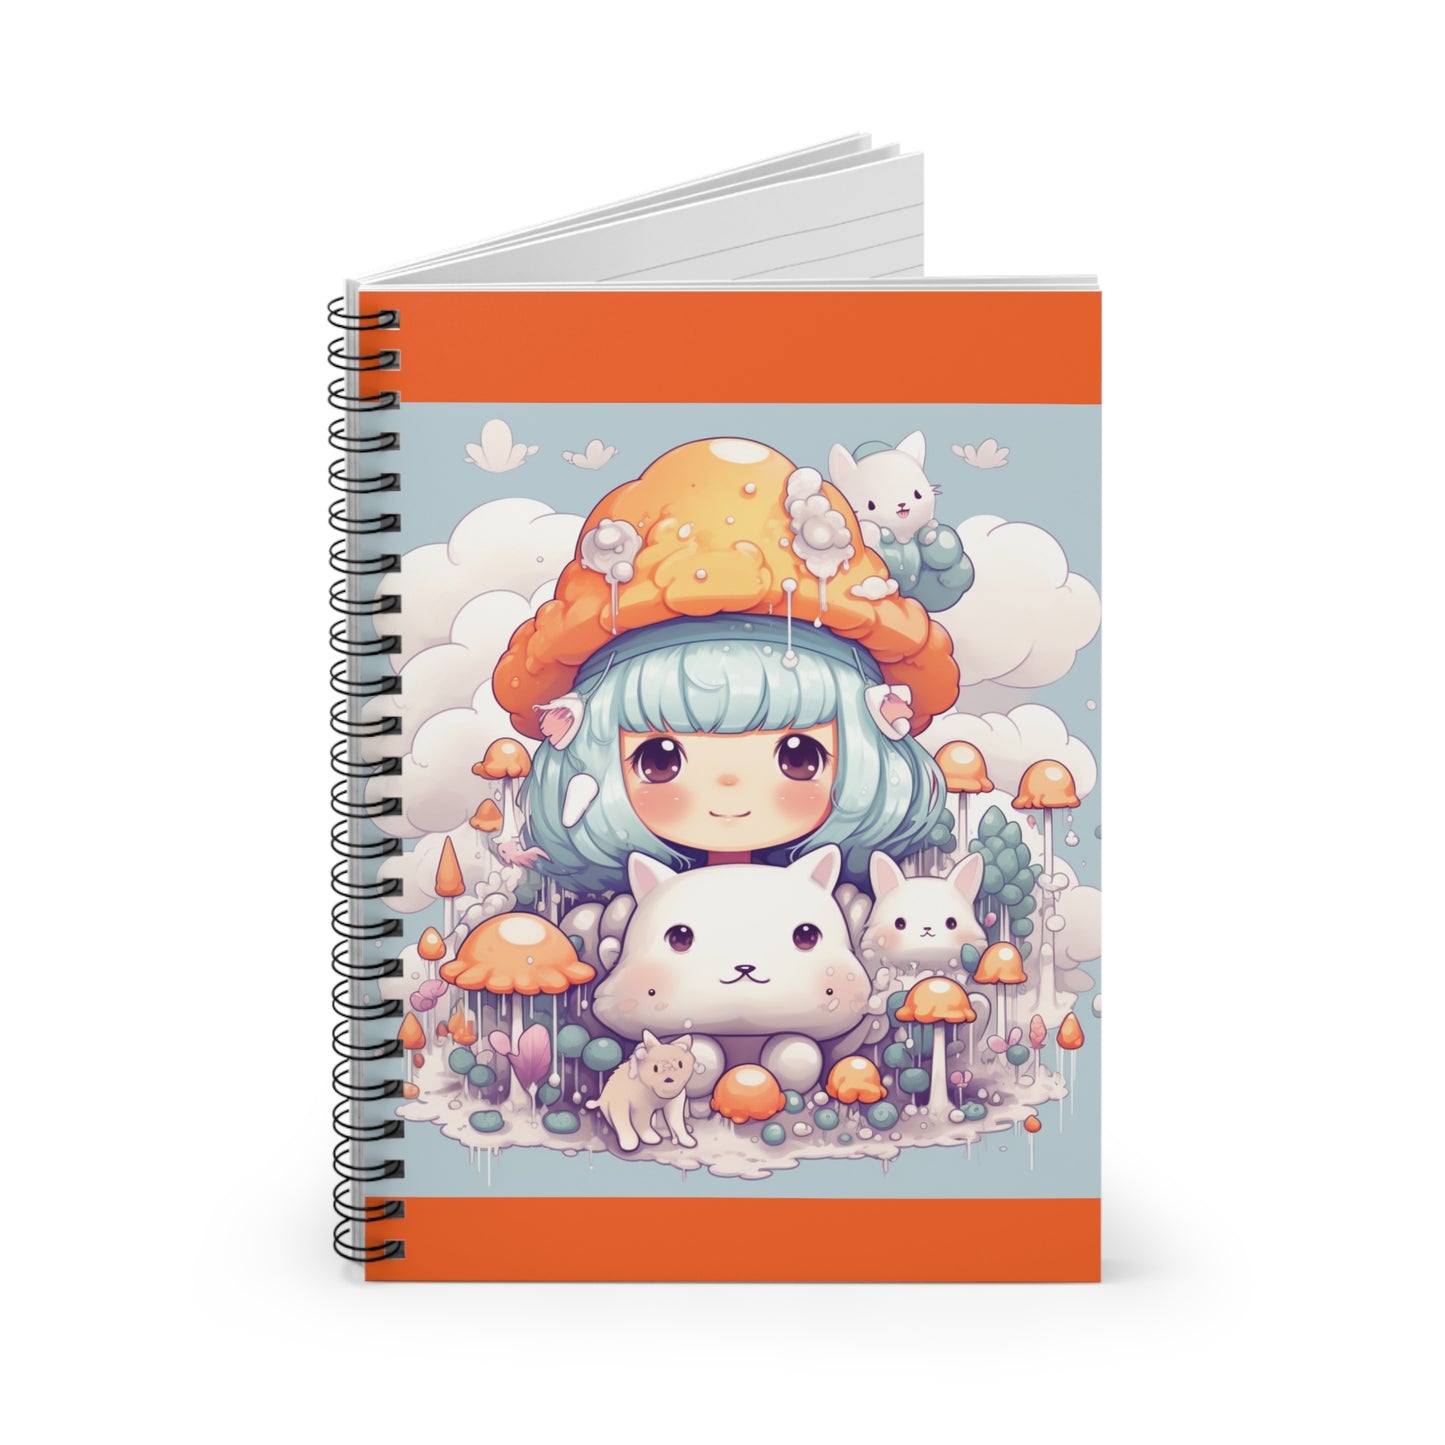 Cute and Kawaii Mindset Motivational School Hobby Journal Spiral Notebook - Ruled Line